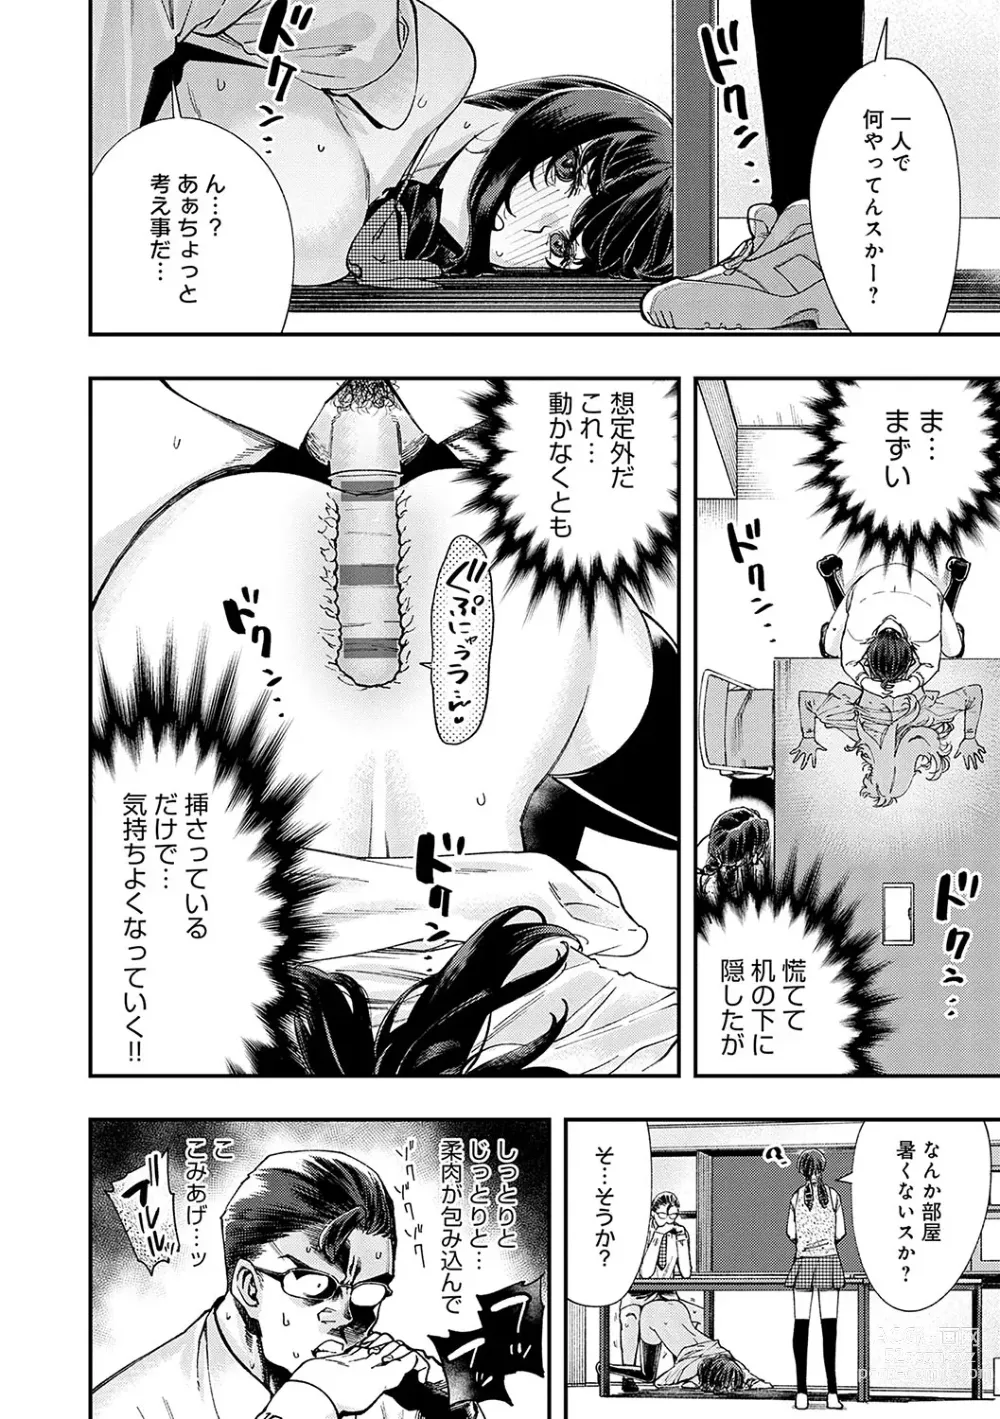 Page 23 of manga Kashikoi Oppai